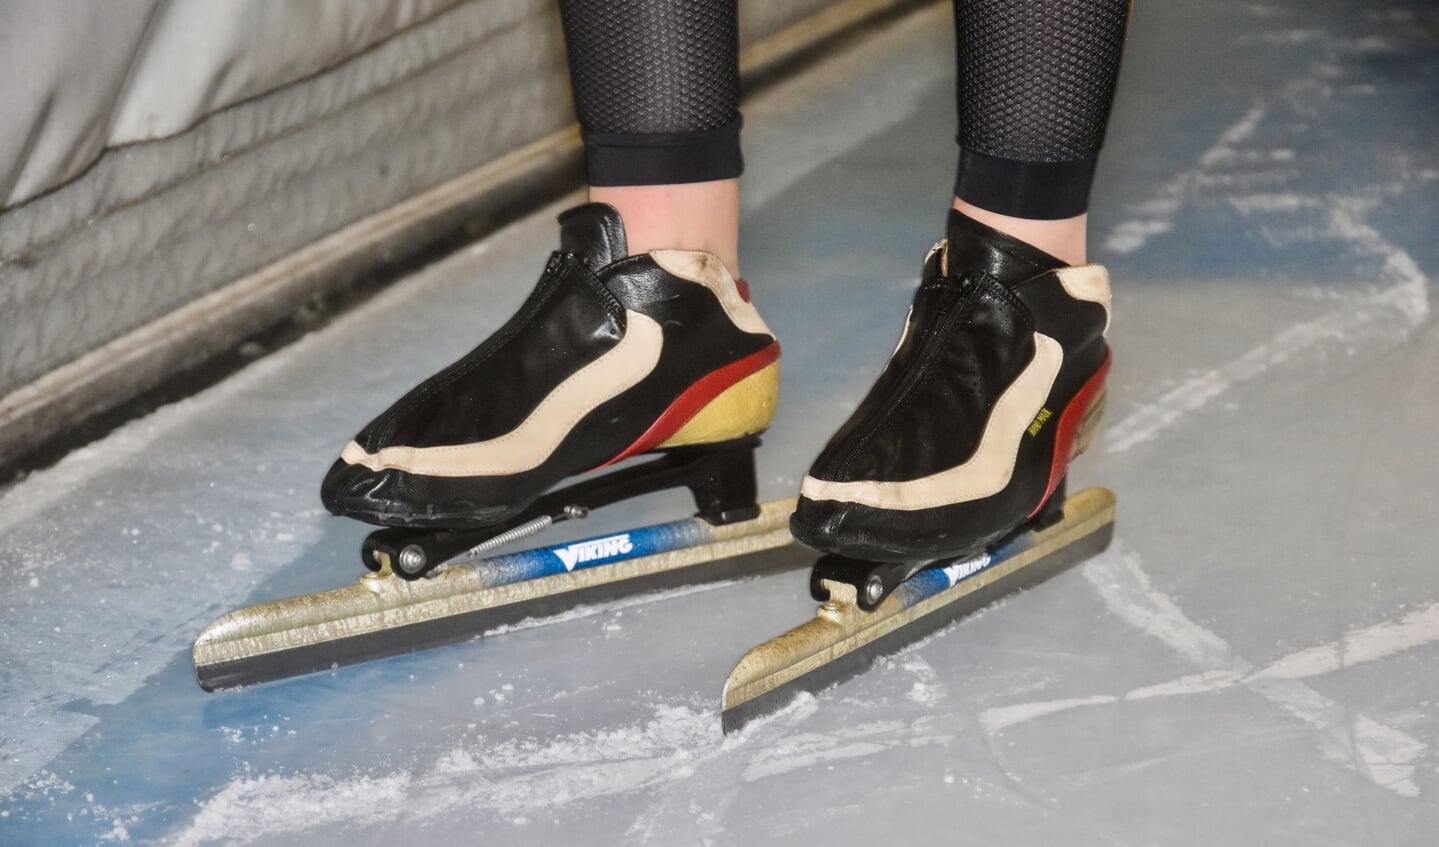 Bente en haar vertrouwde schaatsen.